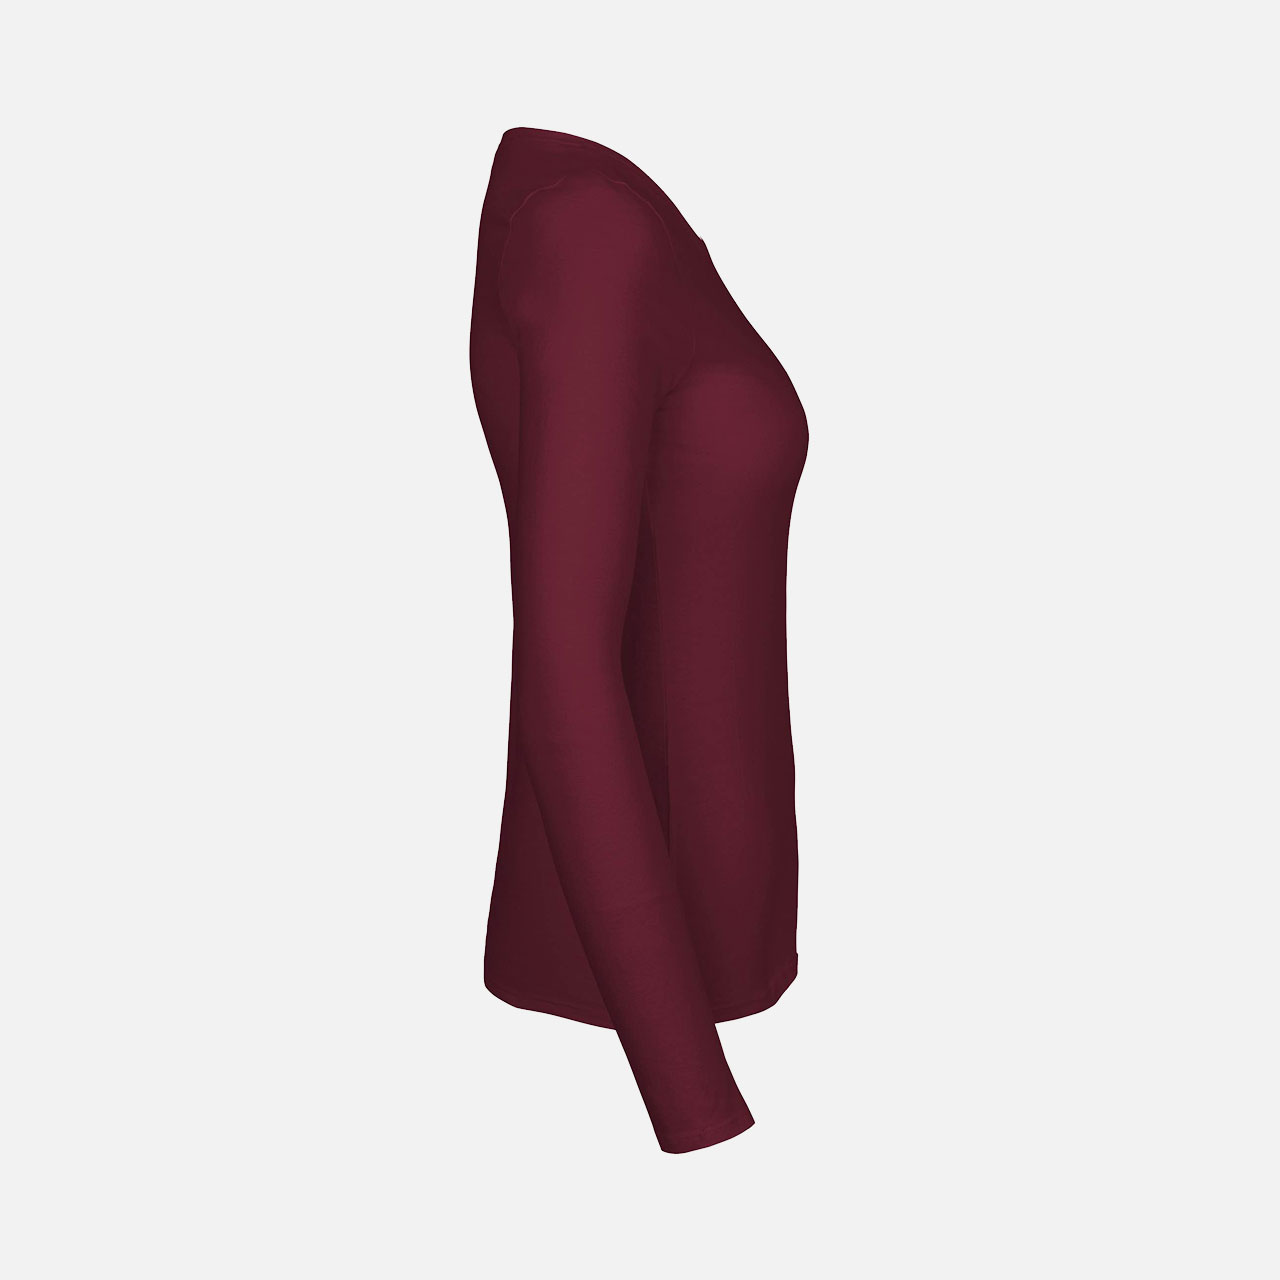 Doppelpack Ladies Long Sleeve Shirt - Bio Baumwolle Bordeaux M Bordeaux